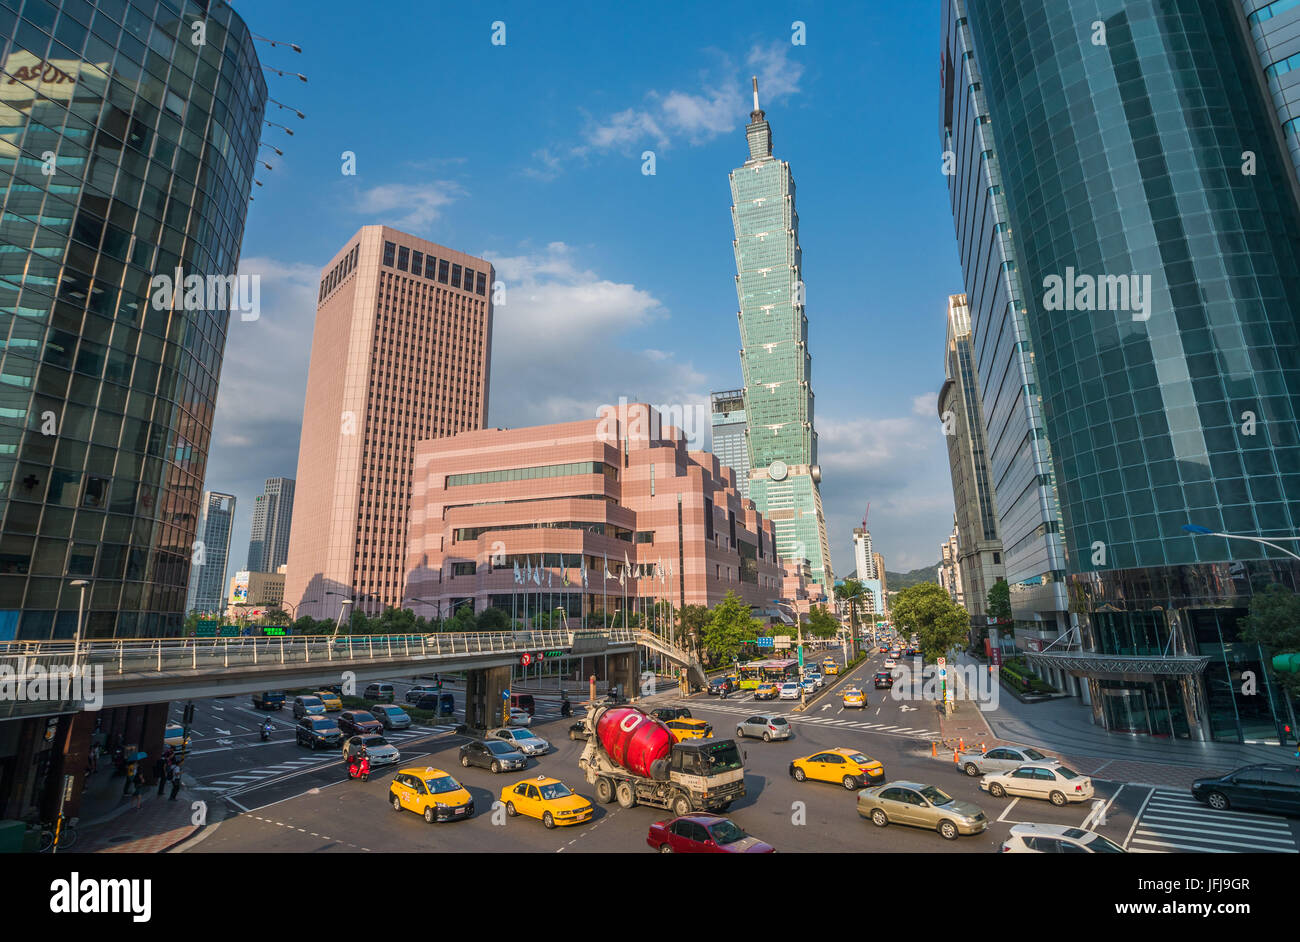 Taiwan, Taipei City, 101 Building Stock Photo